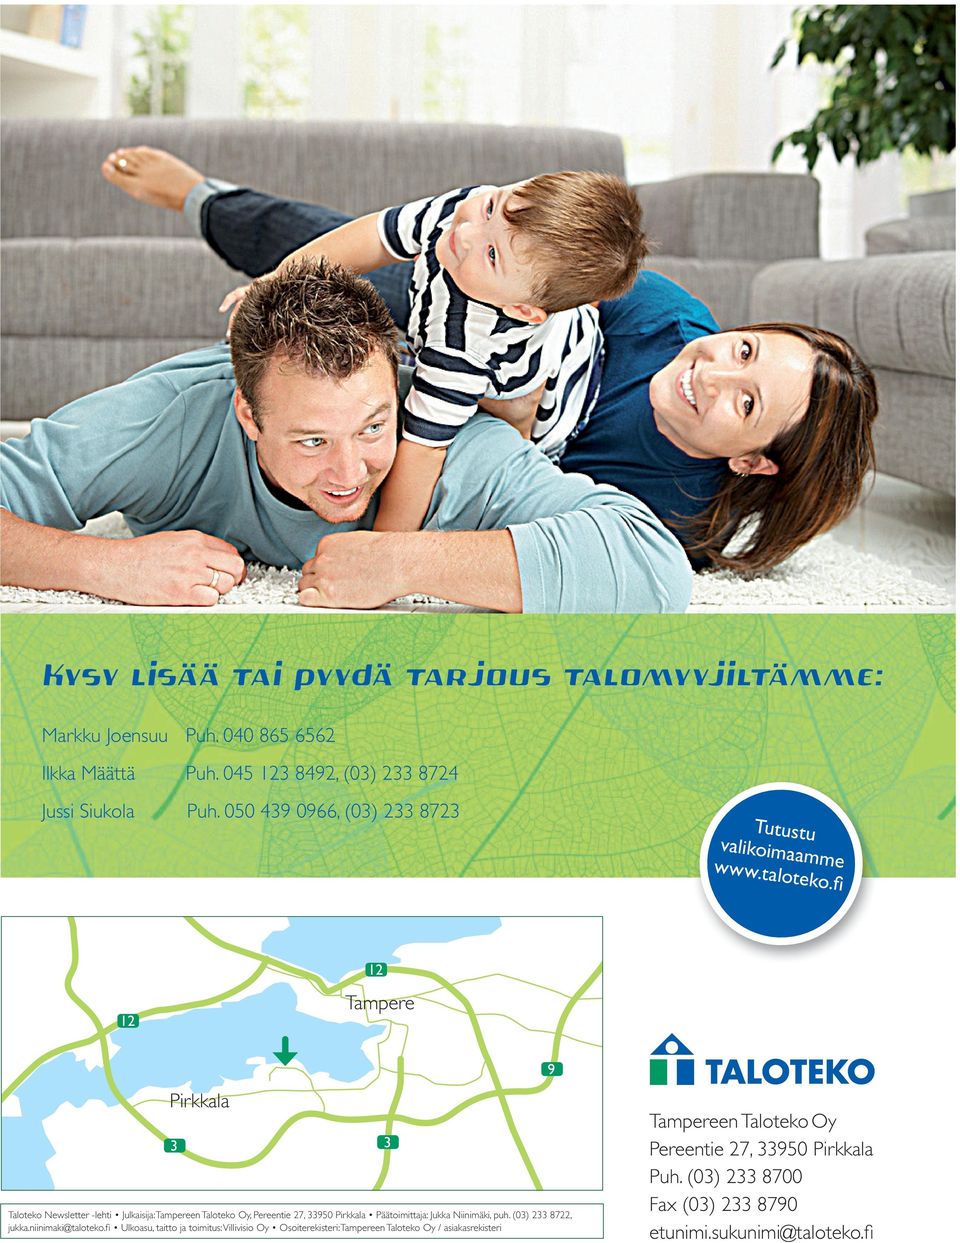 fi 12 12 Tampere Pirkkala 3 3 Taloteko Newsletter -lehti Julkaisija: Tampereen Taloteko Oy, Pereentie 27, 33950 Pirkkala Päätoimittaja: Jukka Niinimäki, puh.